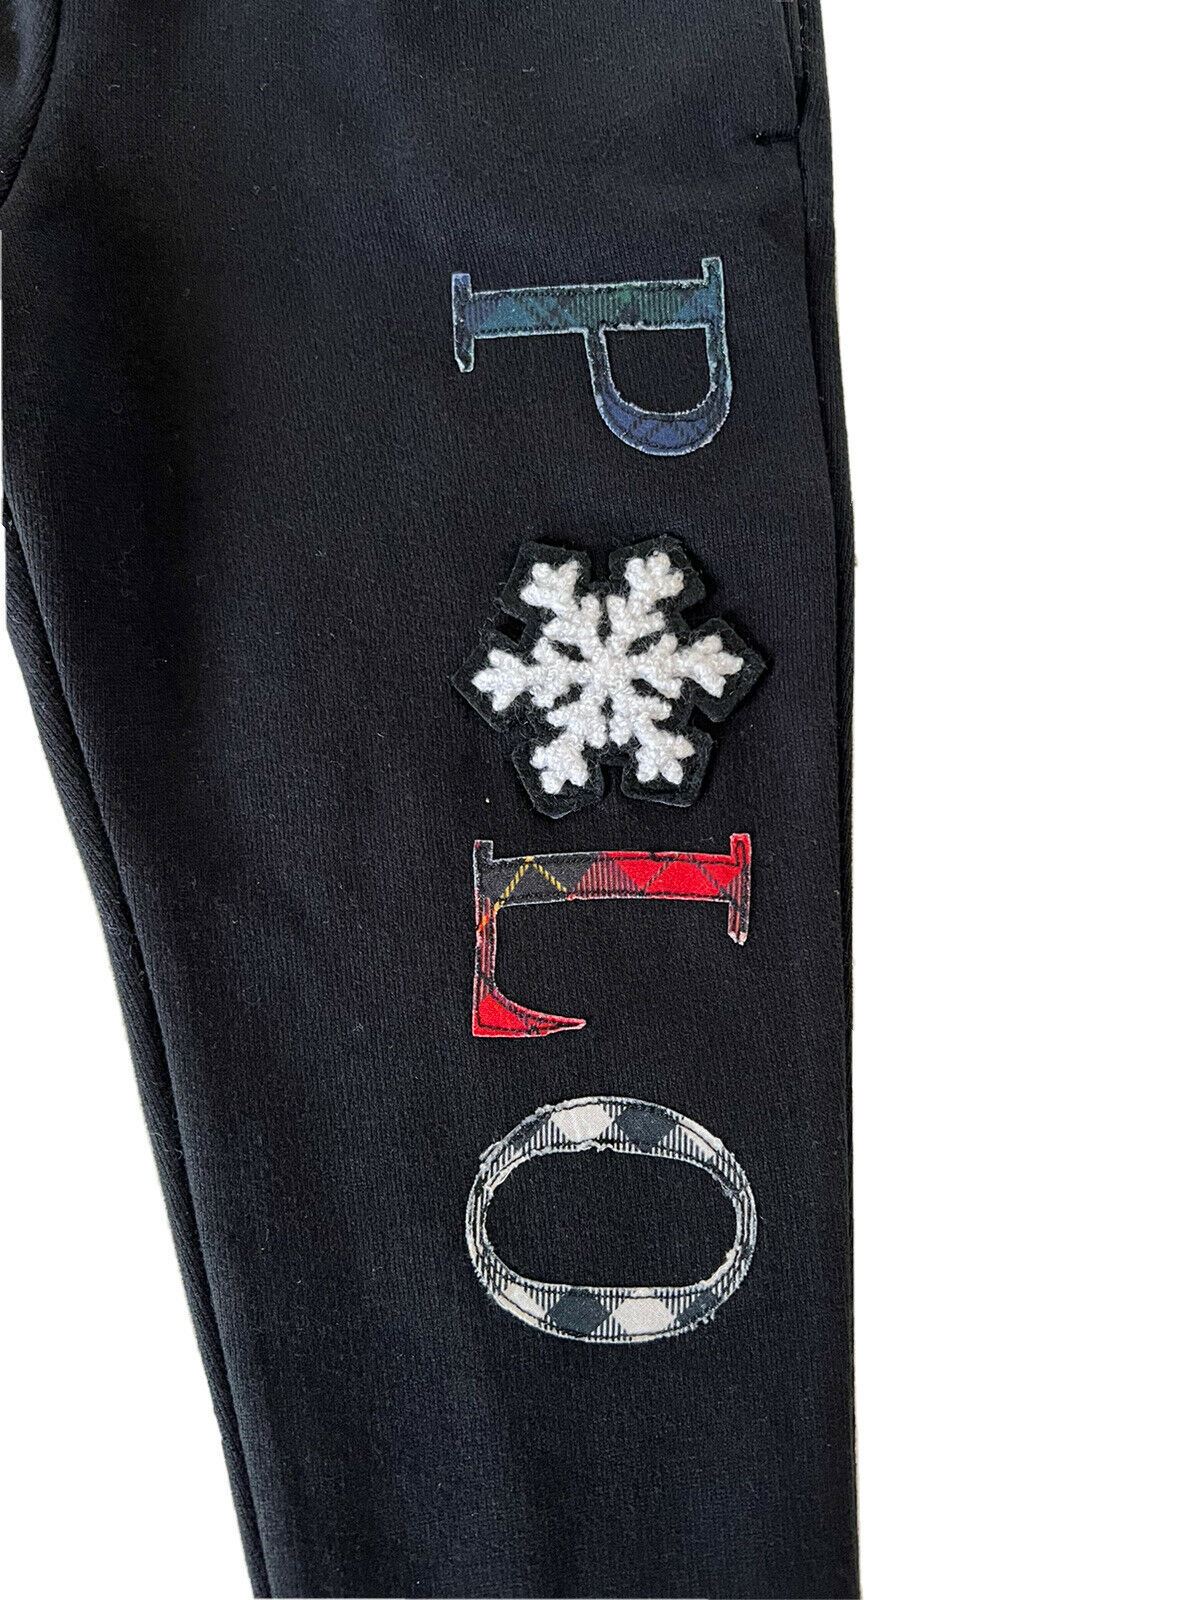 Neu mit Etikett: Schwarze Schneeflocken-Freizeithose 4 von Polo Ralph Lauren für Jungen, hergestellt in Indien